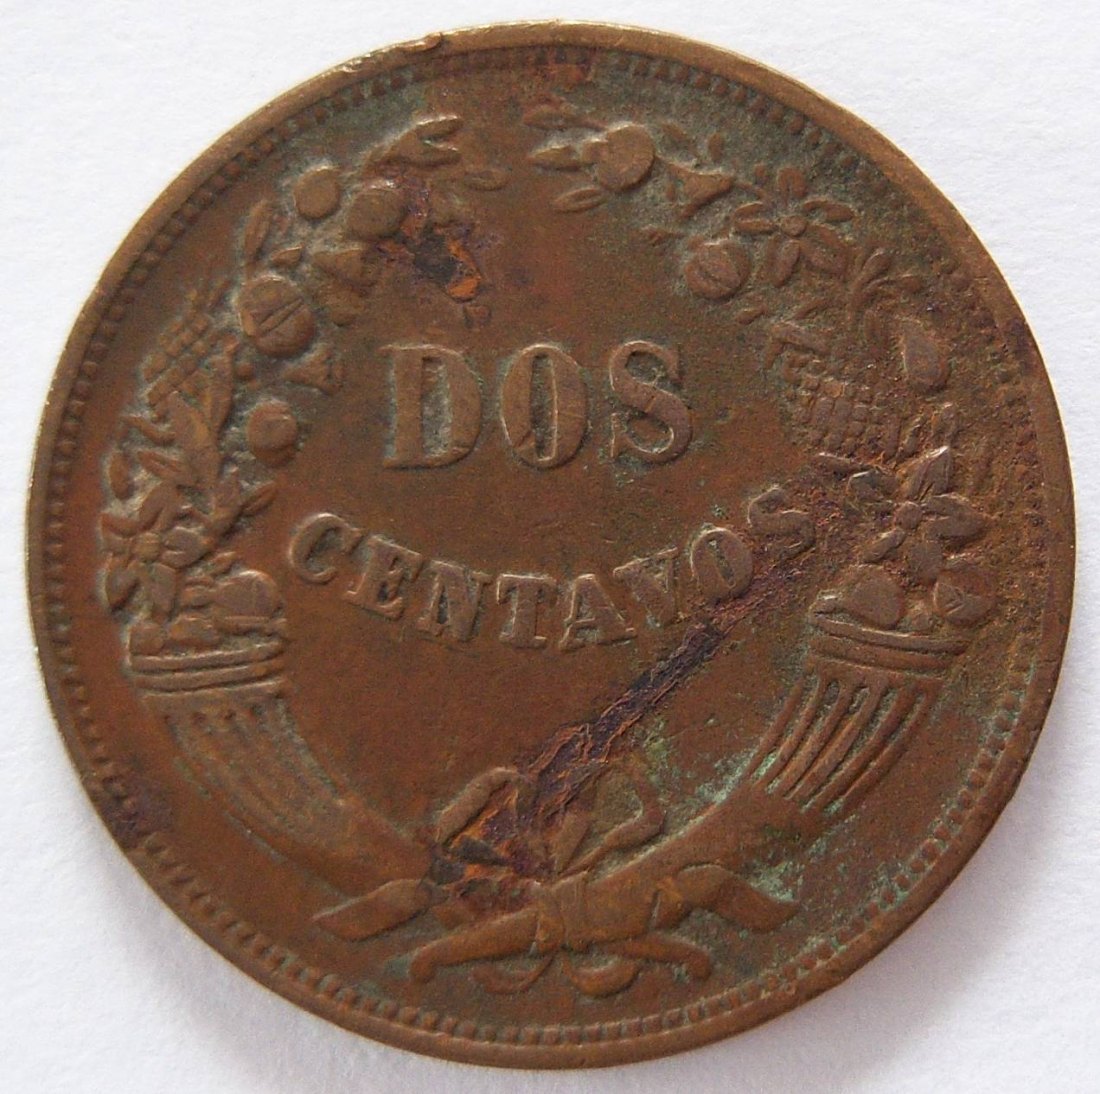  Peru Dos 2 Centavos 1942   